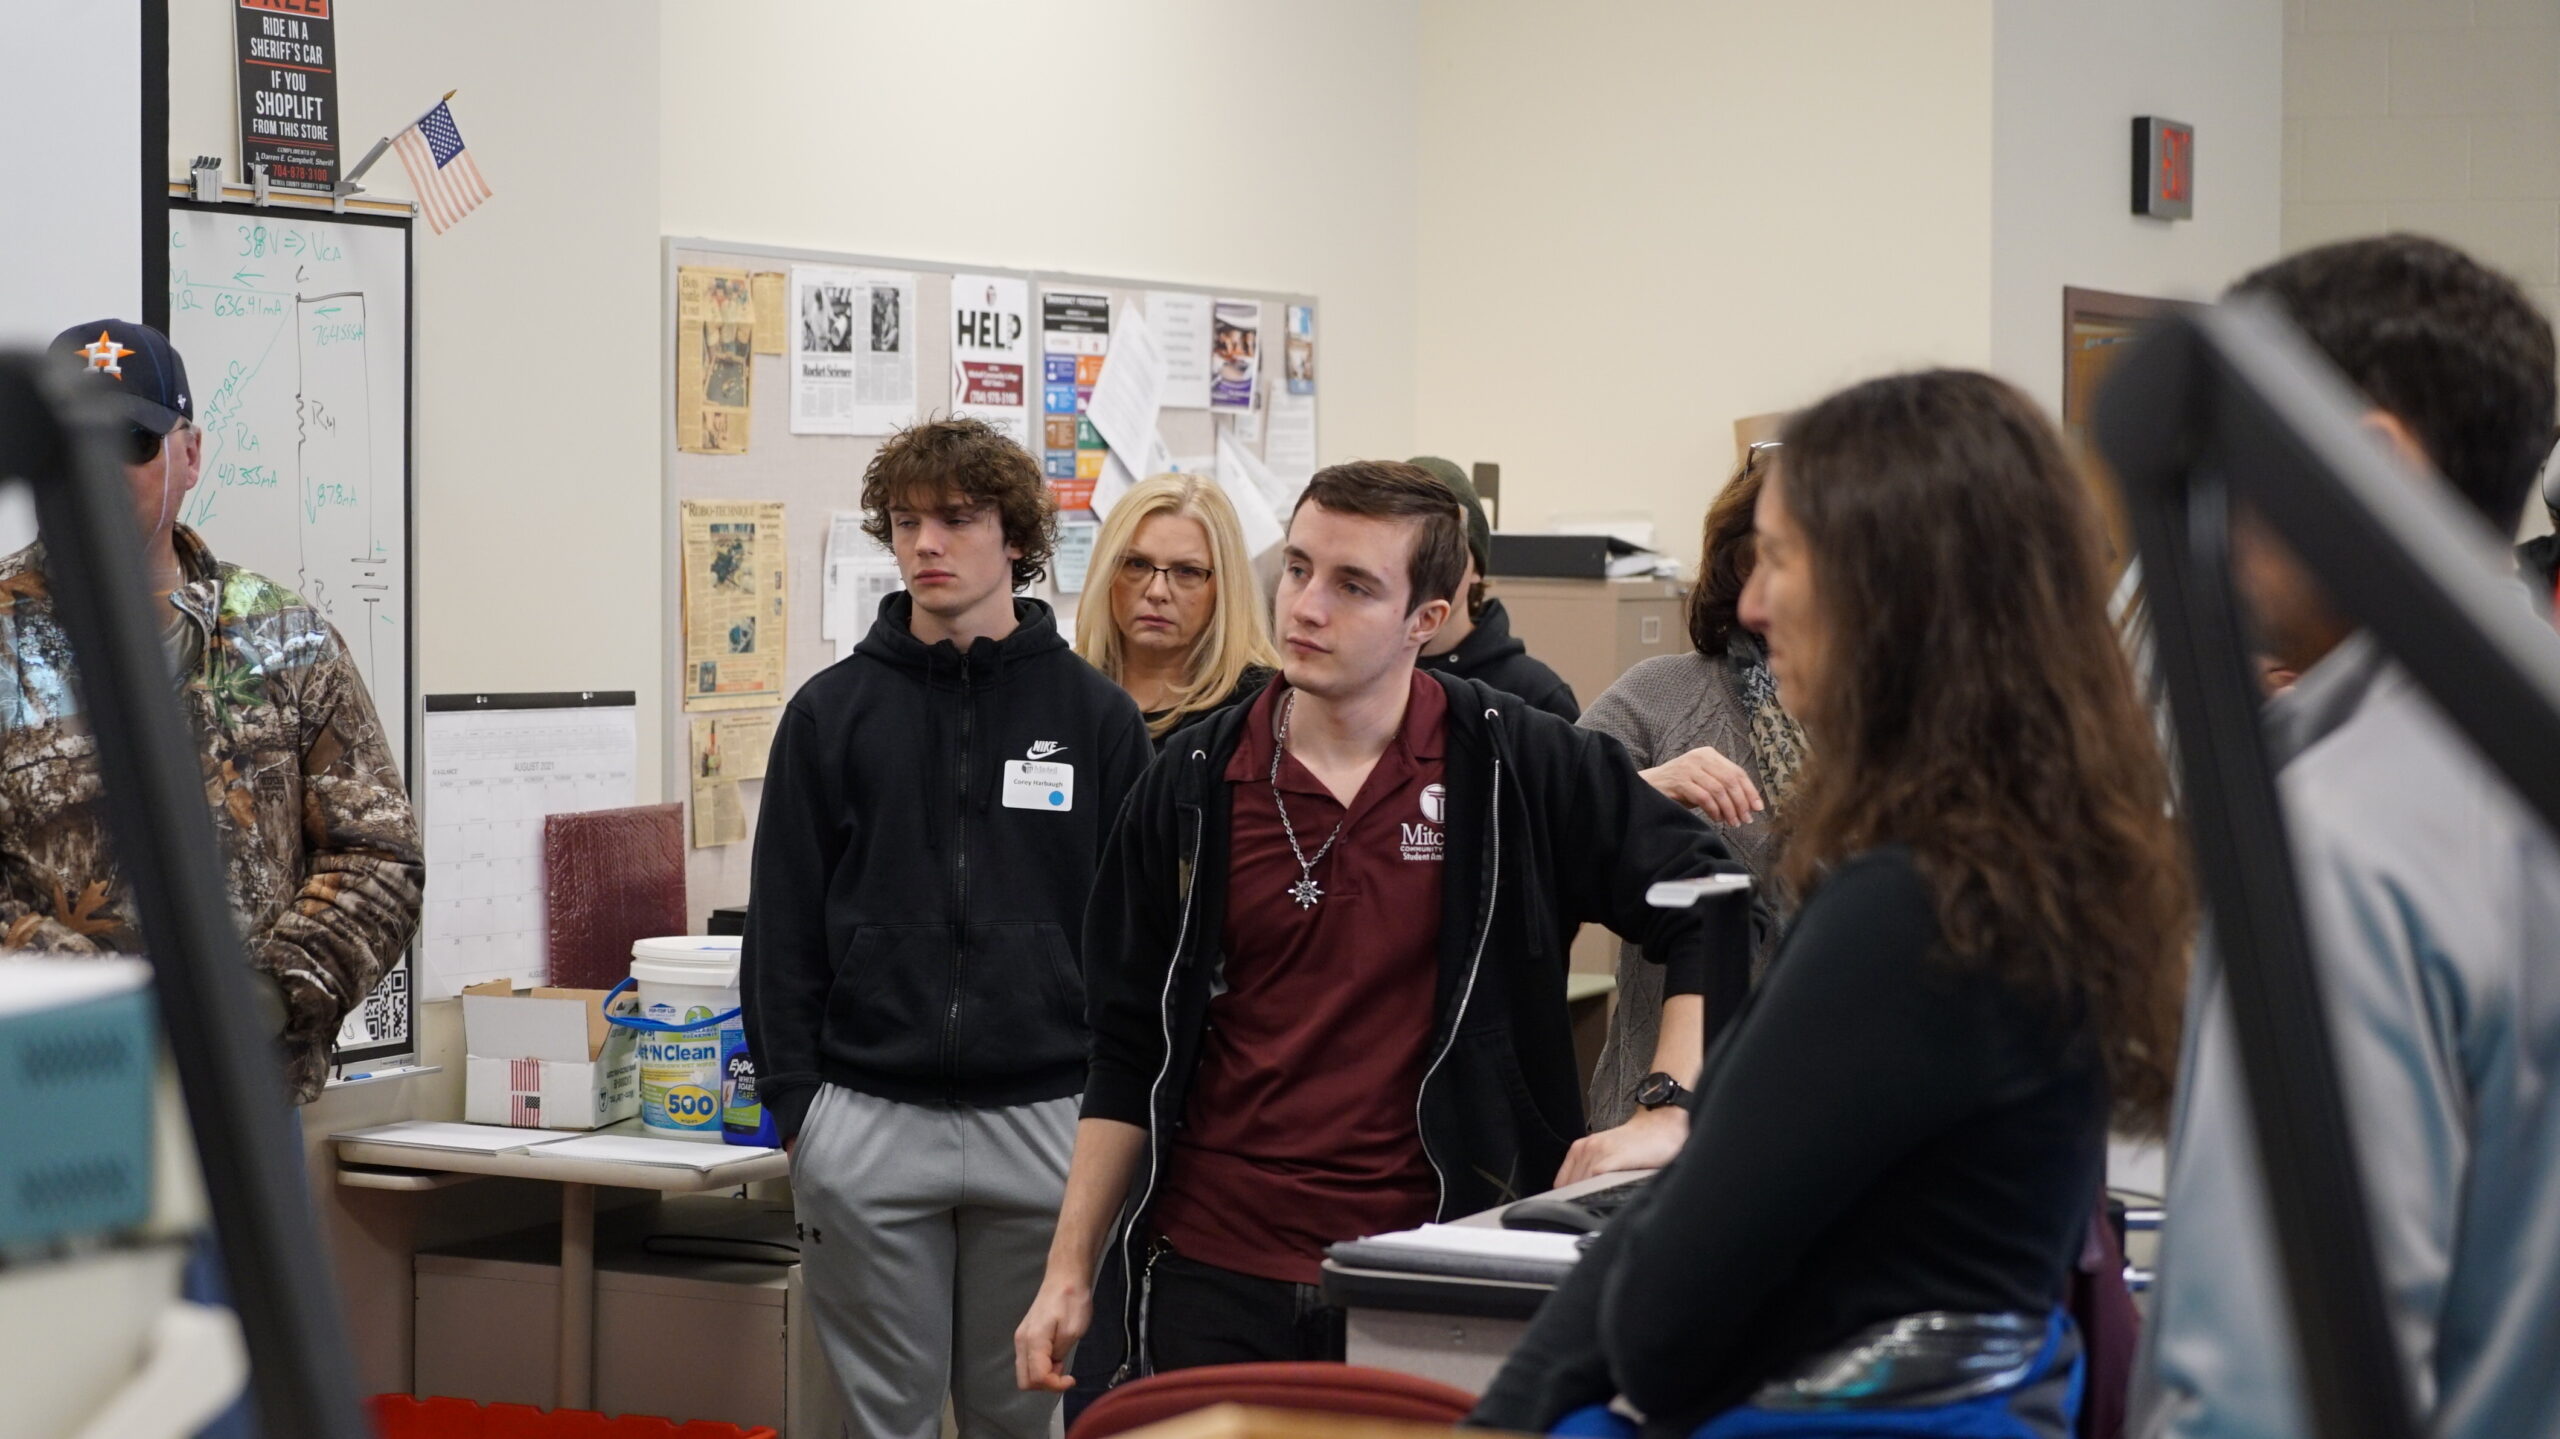 Angehende Mitchell-Studenten hören sich während einer Campustour eine Präsentation an.